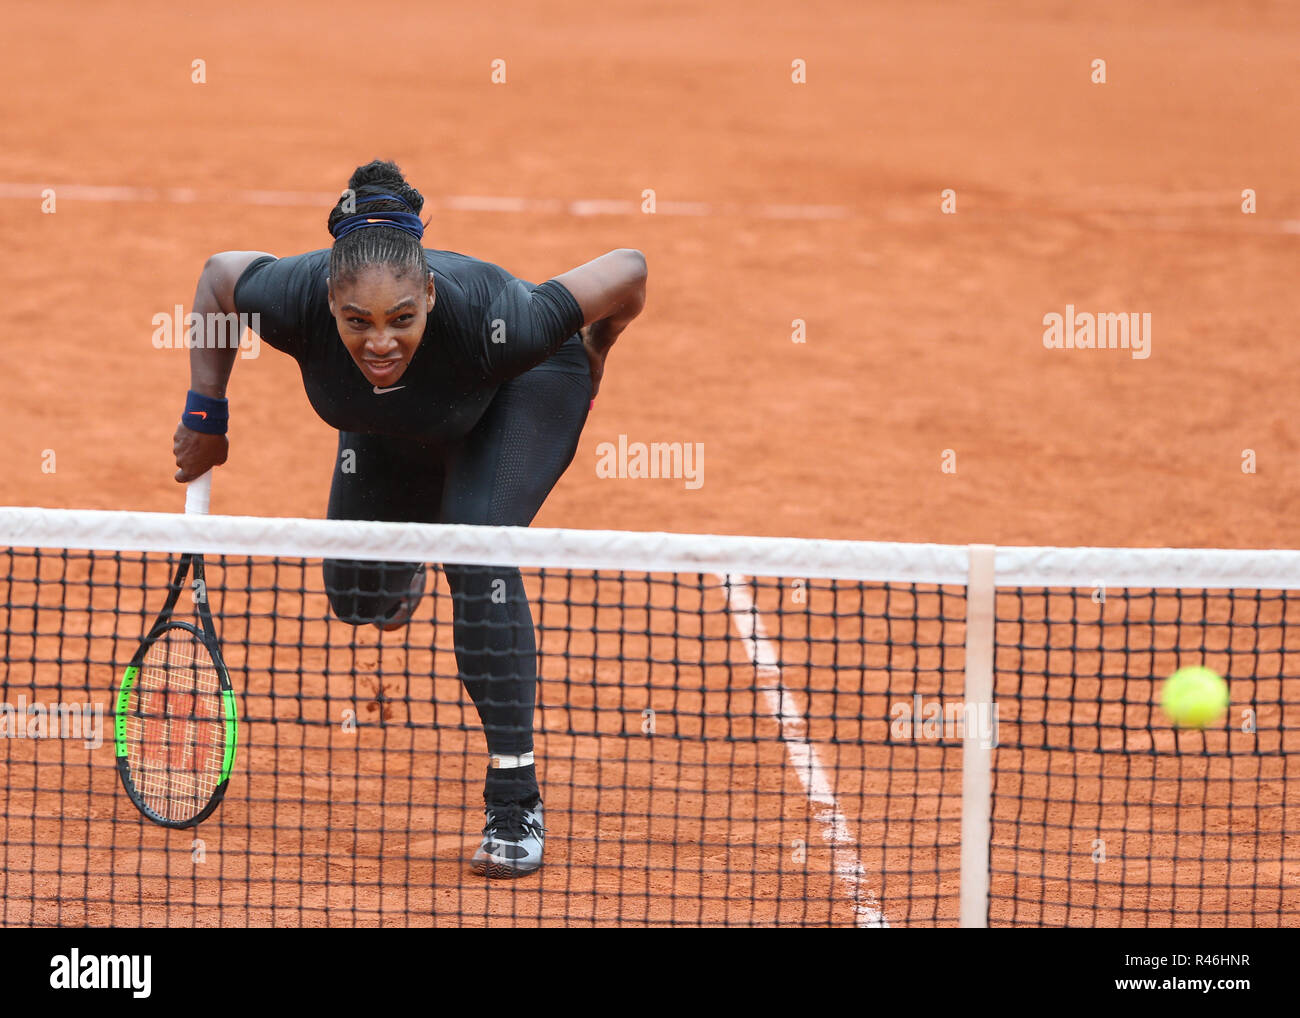 American giocatore di tennis Serena Williams all'aperto francese 2018, Parigi, Francia Foto Stock